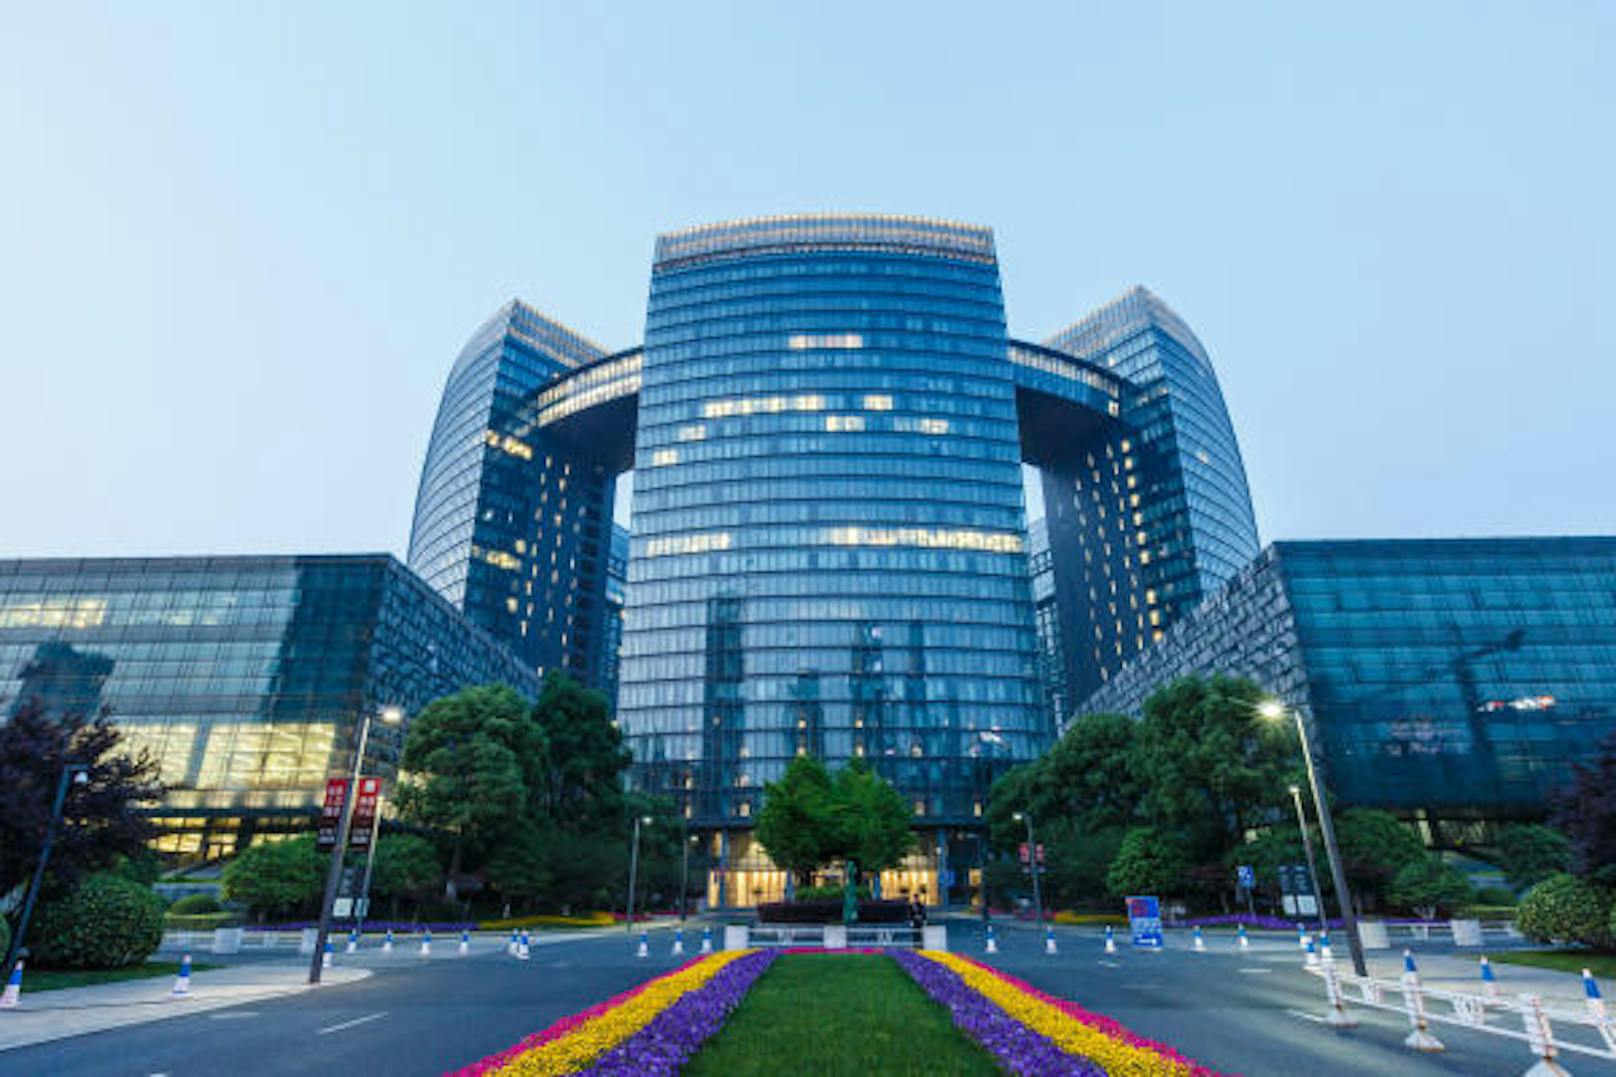 Für das Projekt greift die Regierung tief in die Tasche: Über 2 Milliarden Dollar werden in die Anlage investiert. (Im Bild: Hangzhou Civic Centre Building)